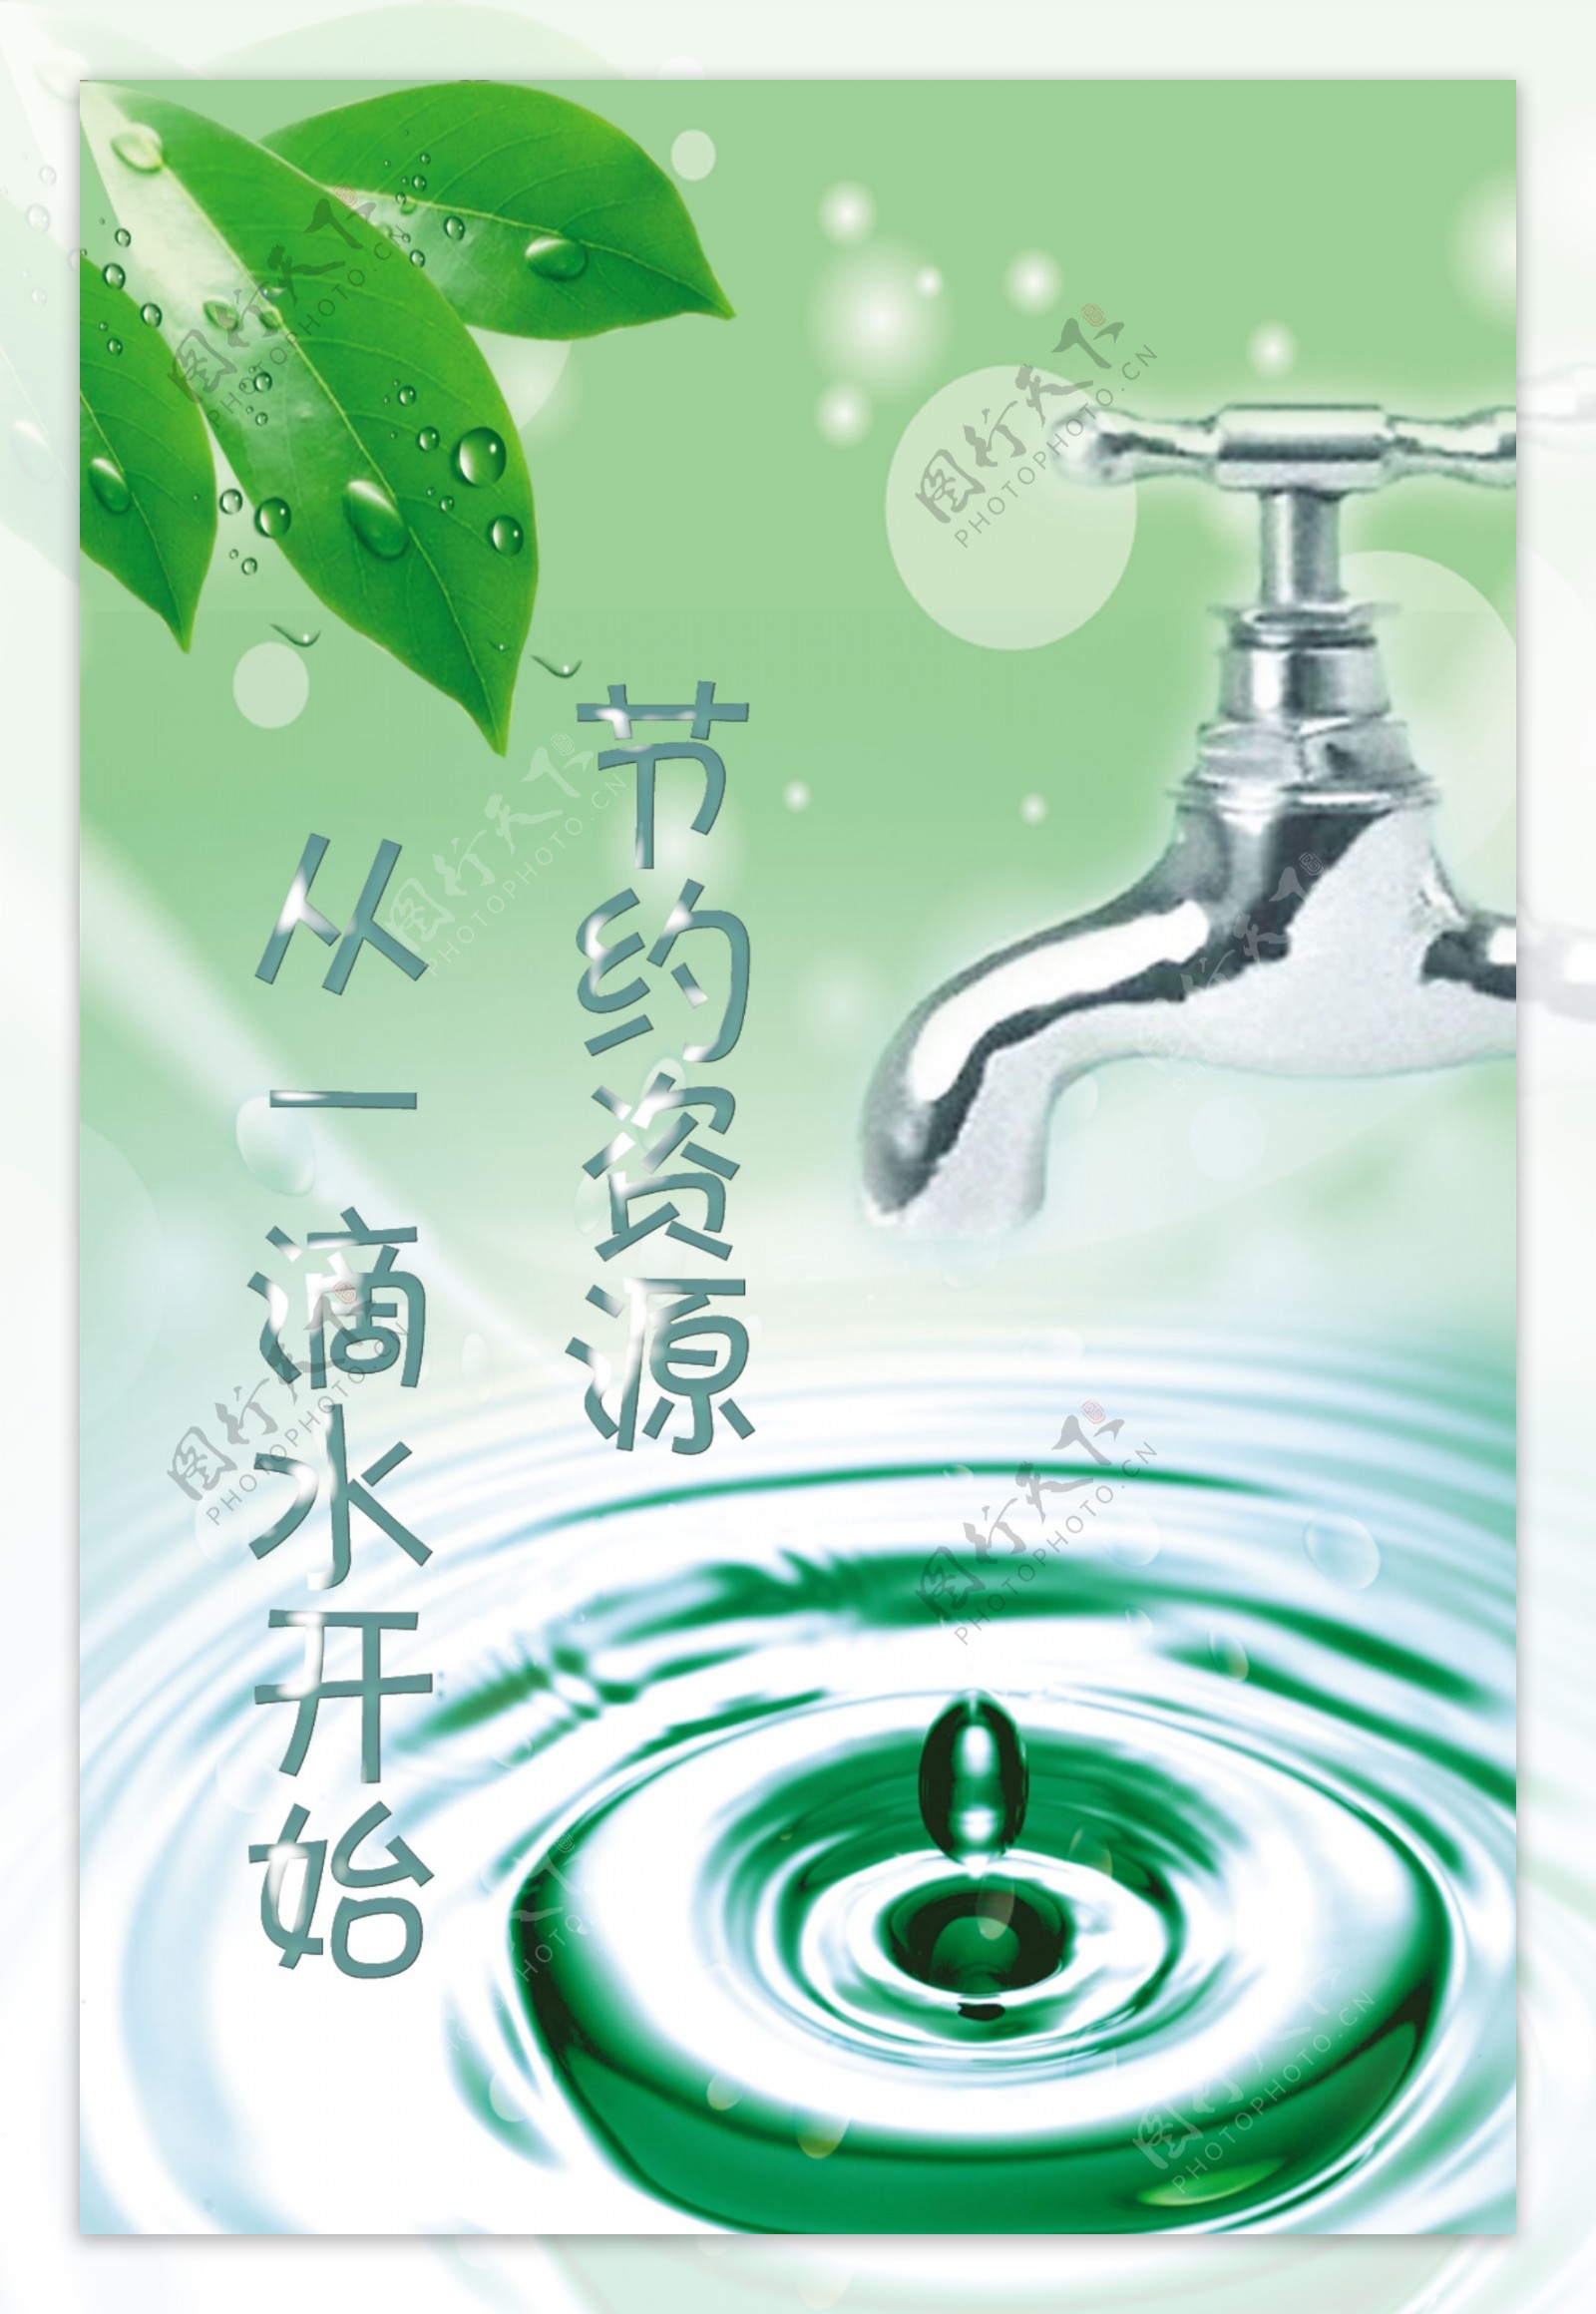 节约用水珍惜水资源主题海报设计模板 (psd) - 摄视觉